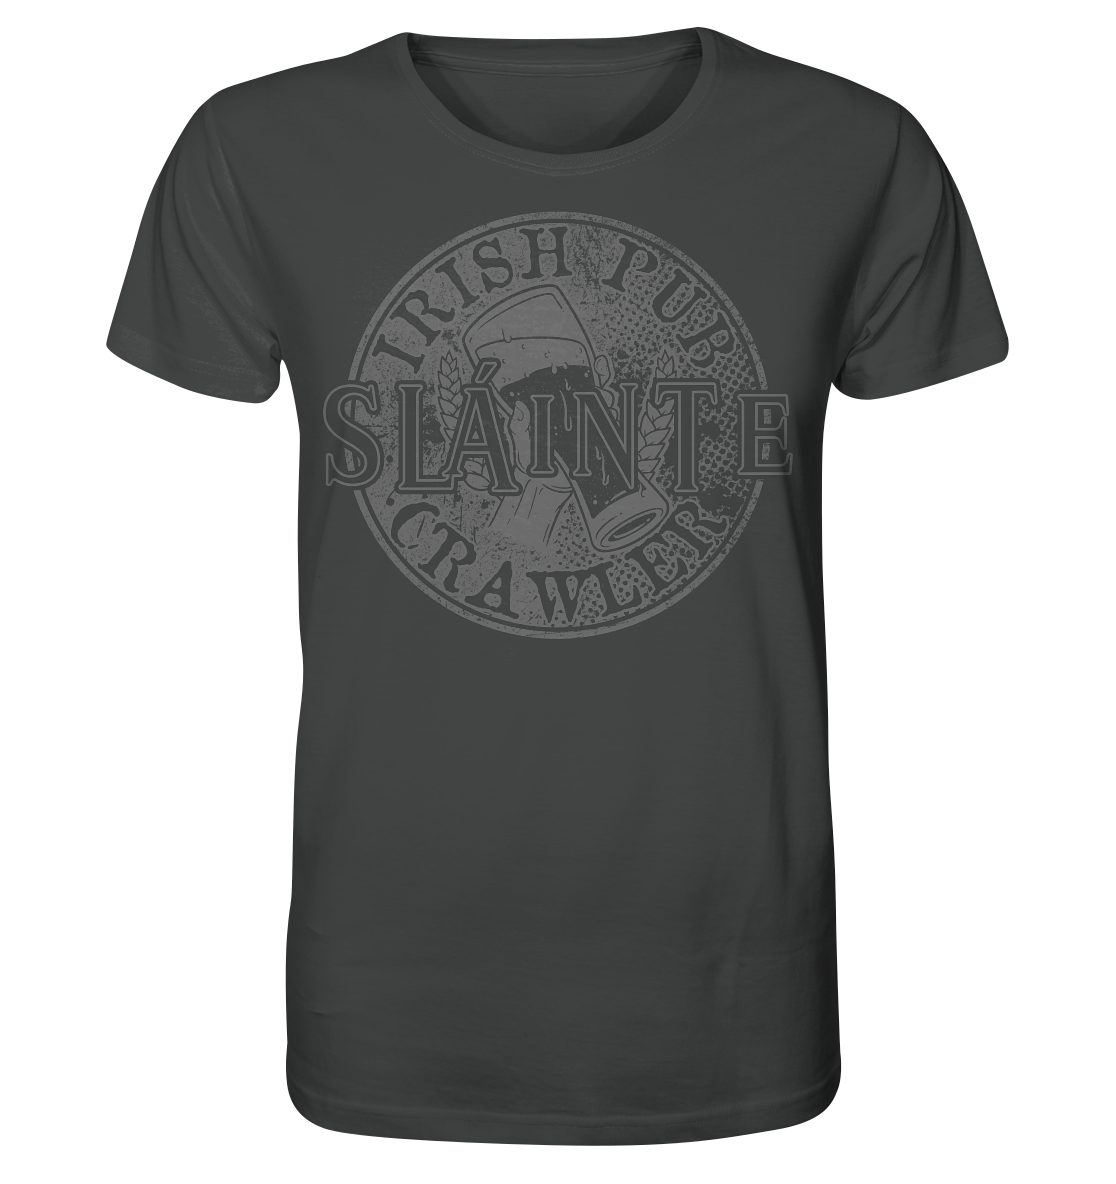 Sláinte "Irish Pub Crawler" - Organic Shirt